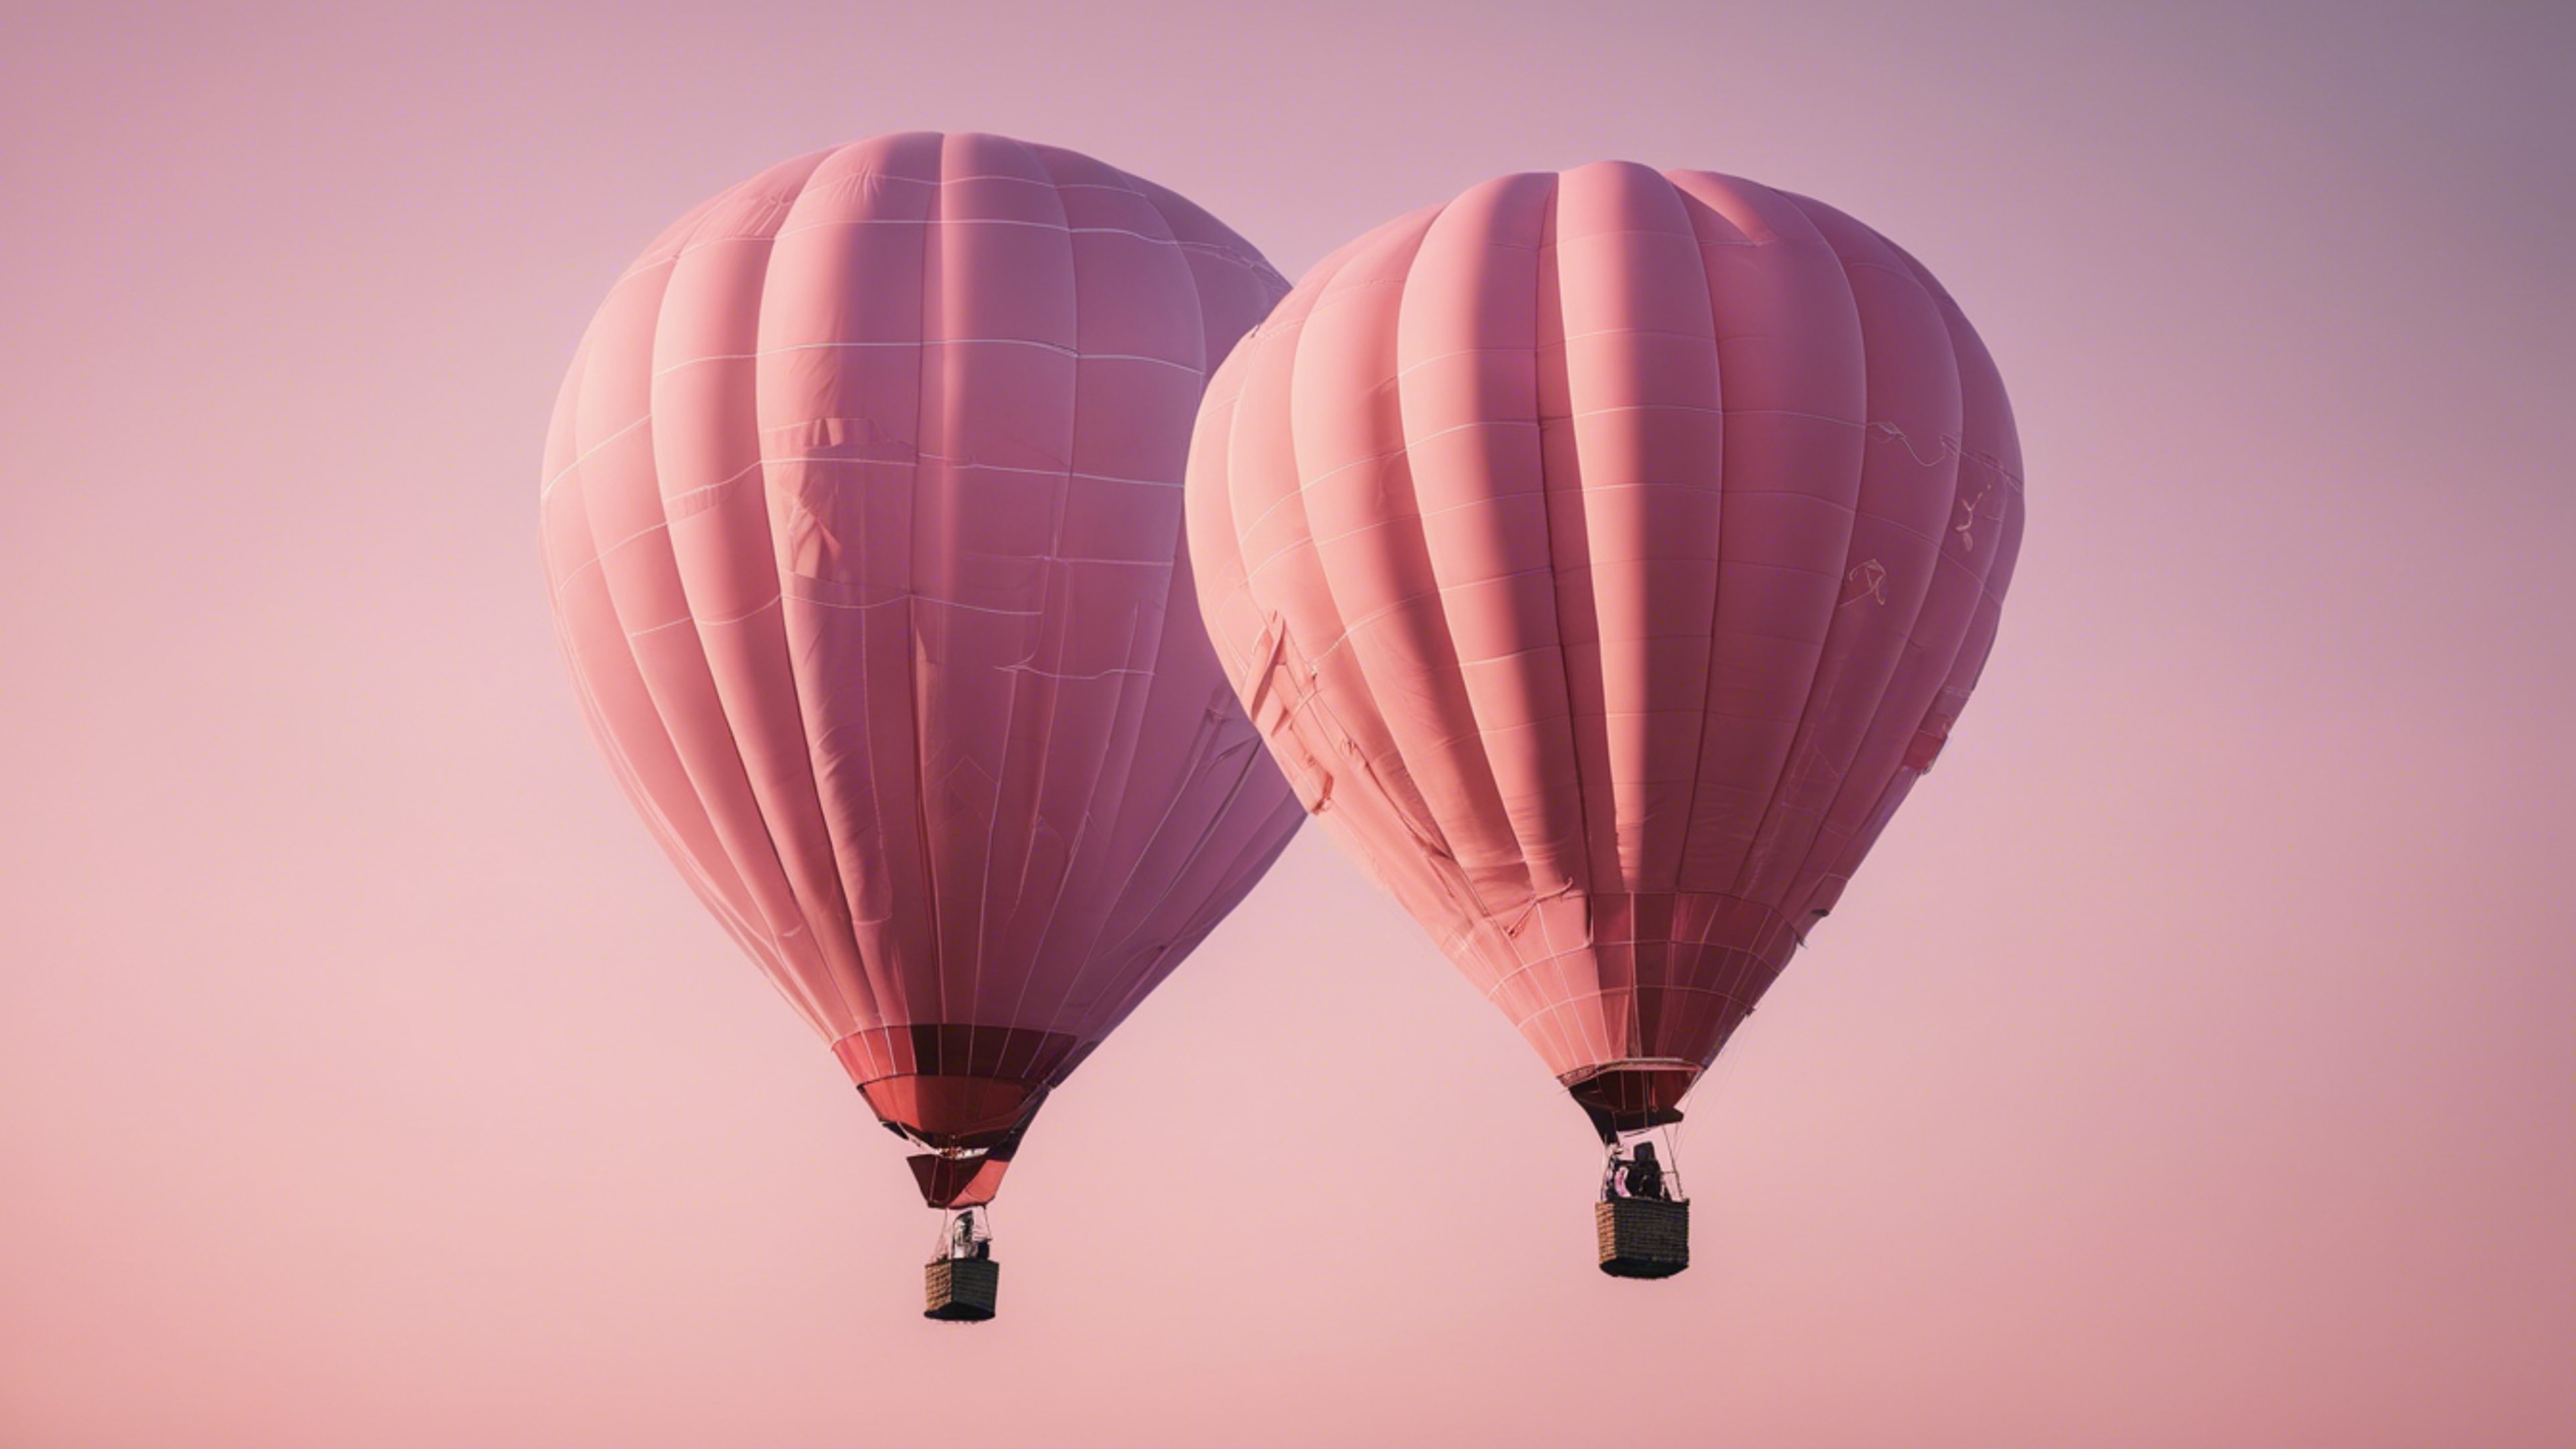 A light pink hot air balloon floating across a clear sky after sunrise. Tapet[de0e3537891a4cb8b964]